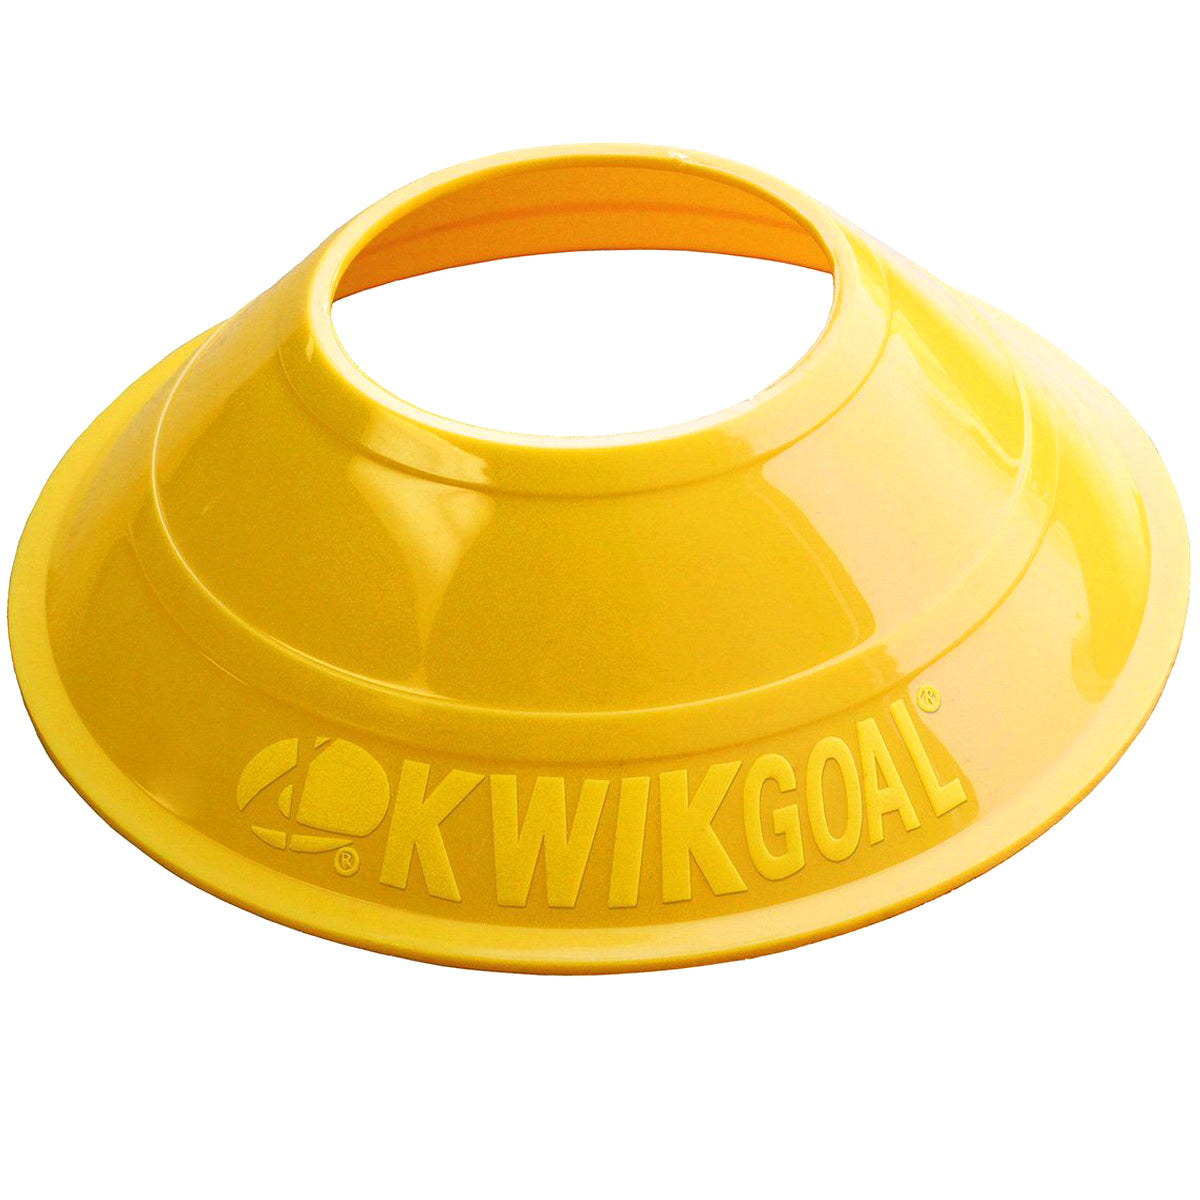 Kwikgoal Mini Disc Cones Soccer Coaching Equipment | 6A14 Field equipment Kwikgoal Yellow 